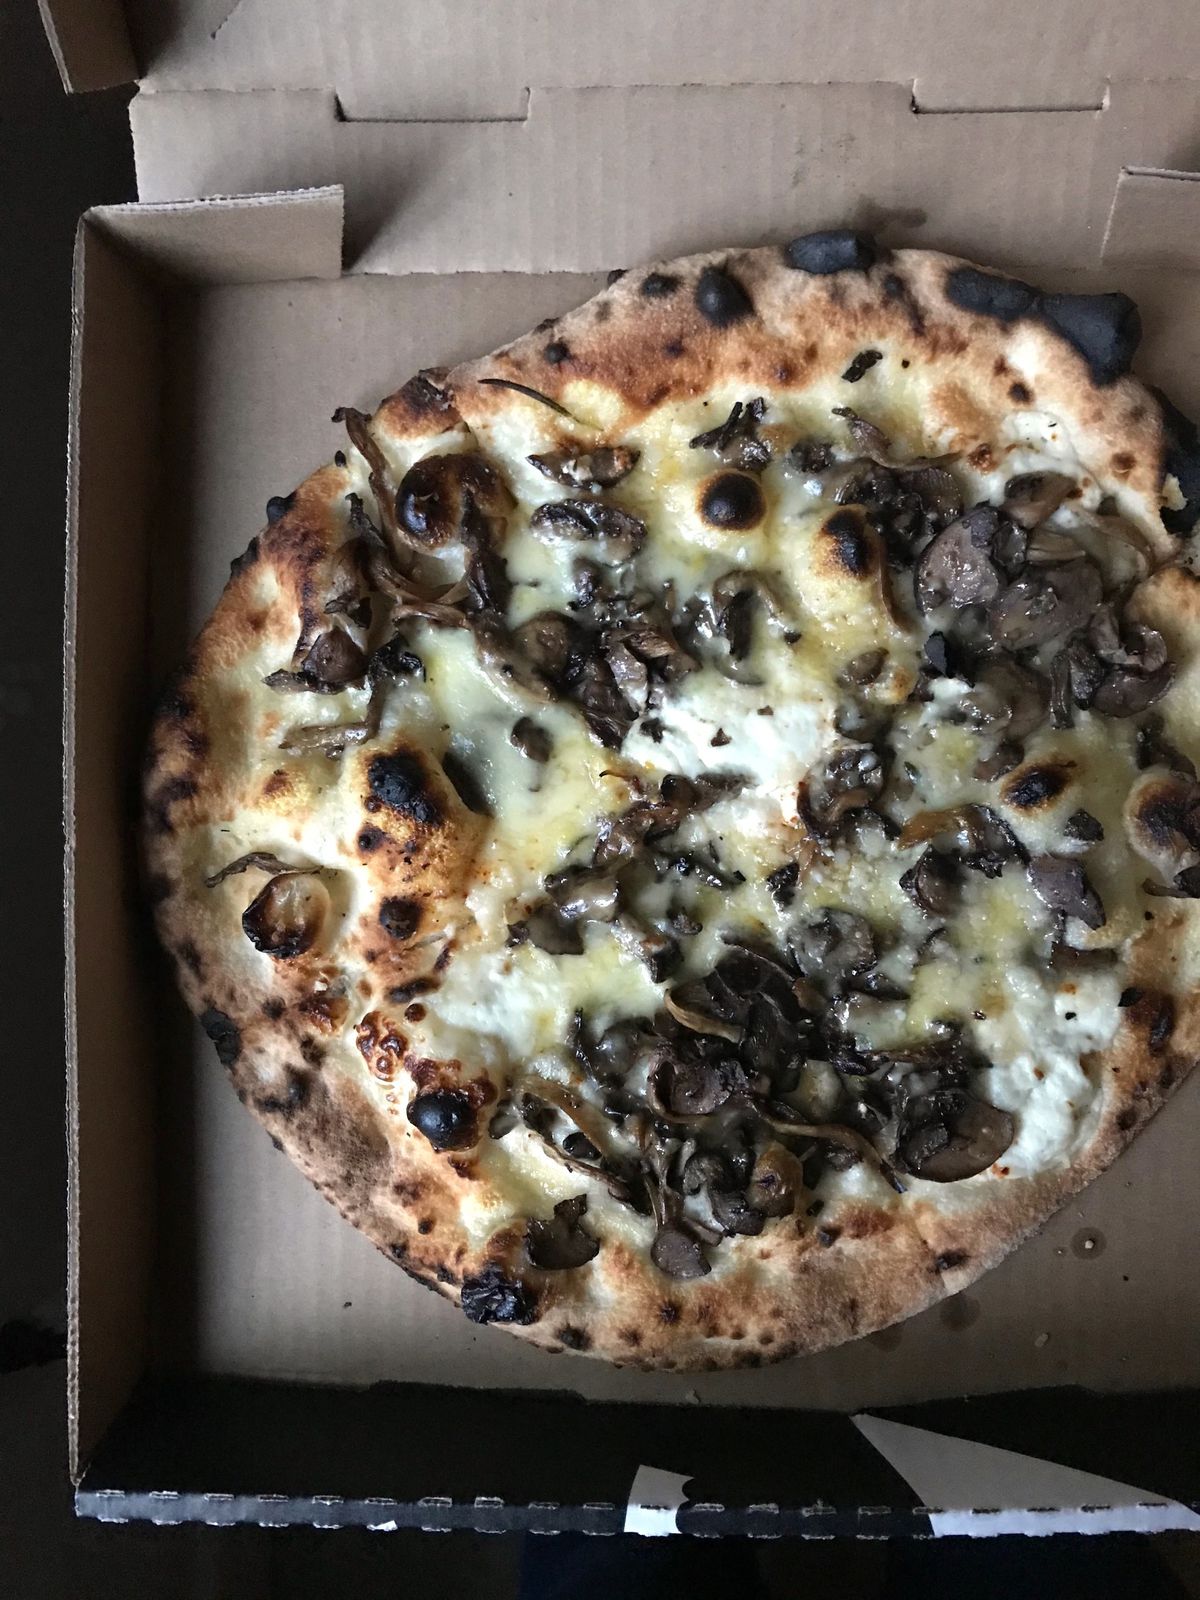 Funghi pizza from Fiorella